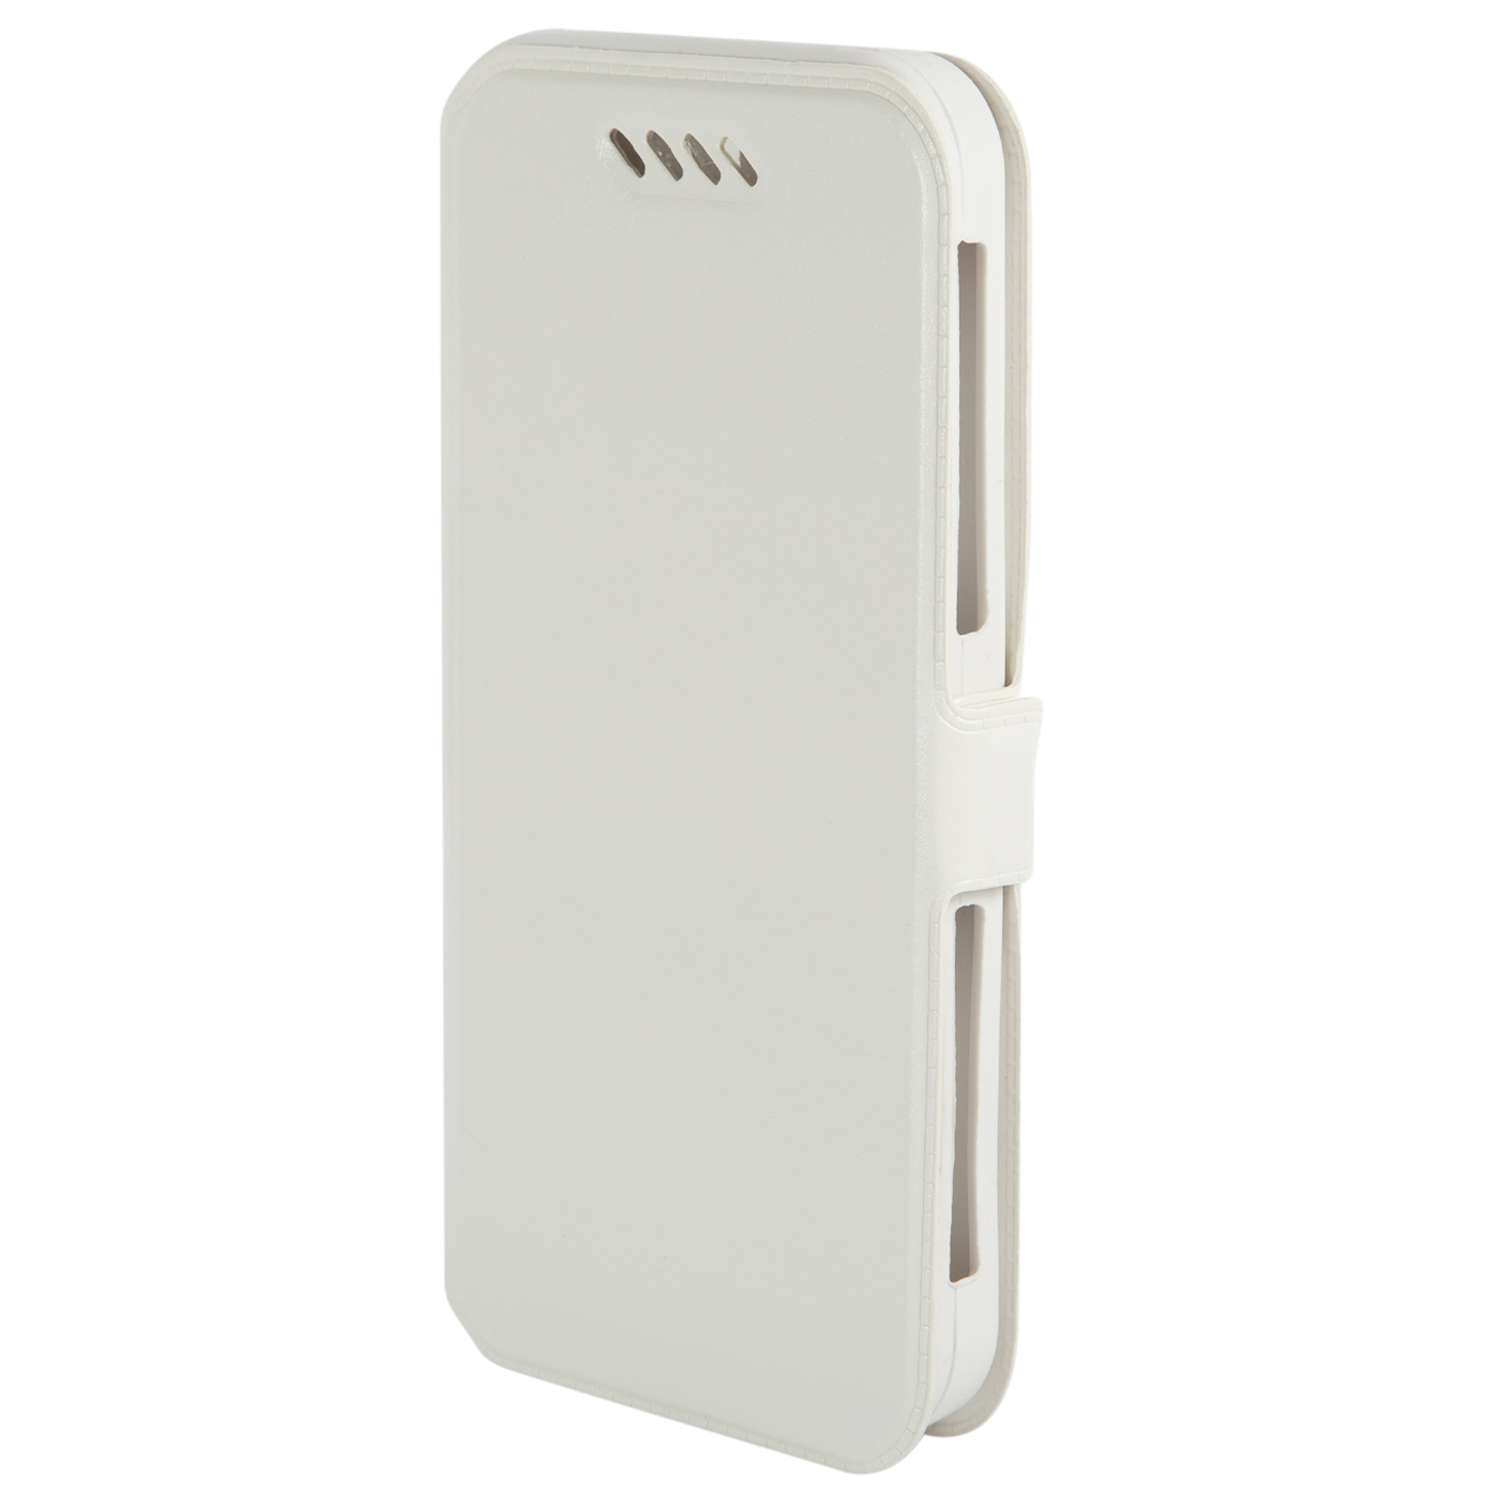 Чехол универсальный iBox Universal Slide для телефонов 4.2-5 дюймов белый - фото 1